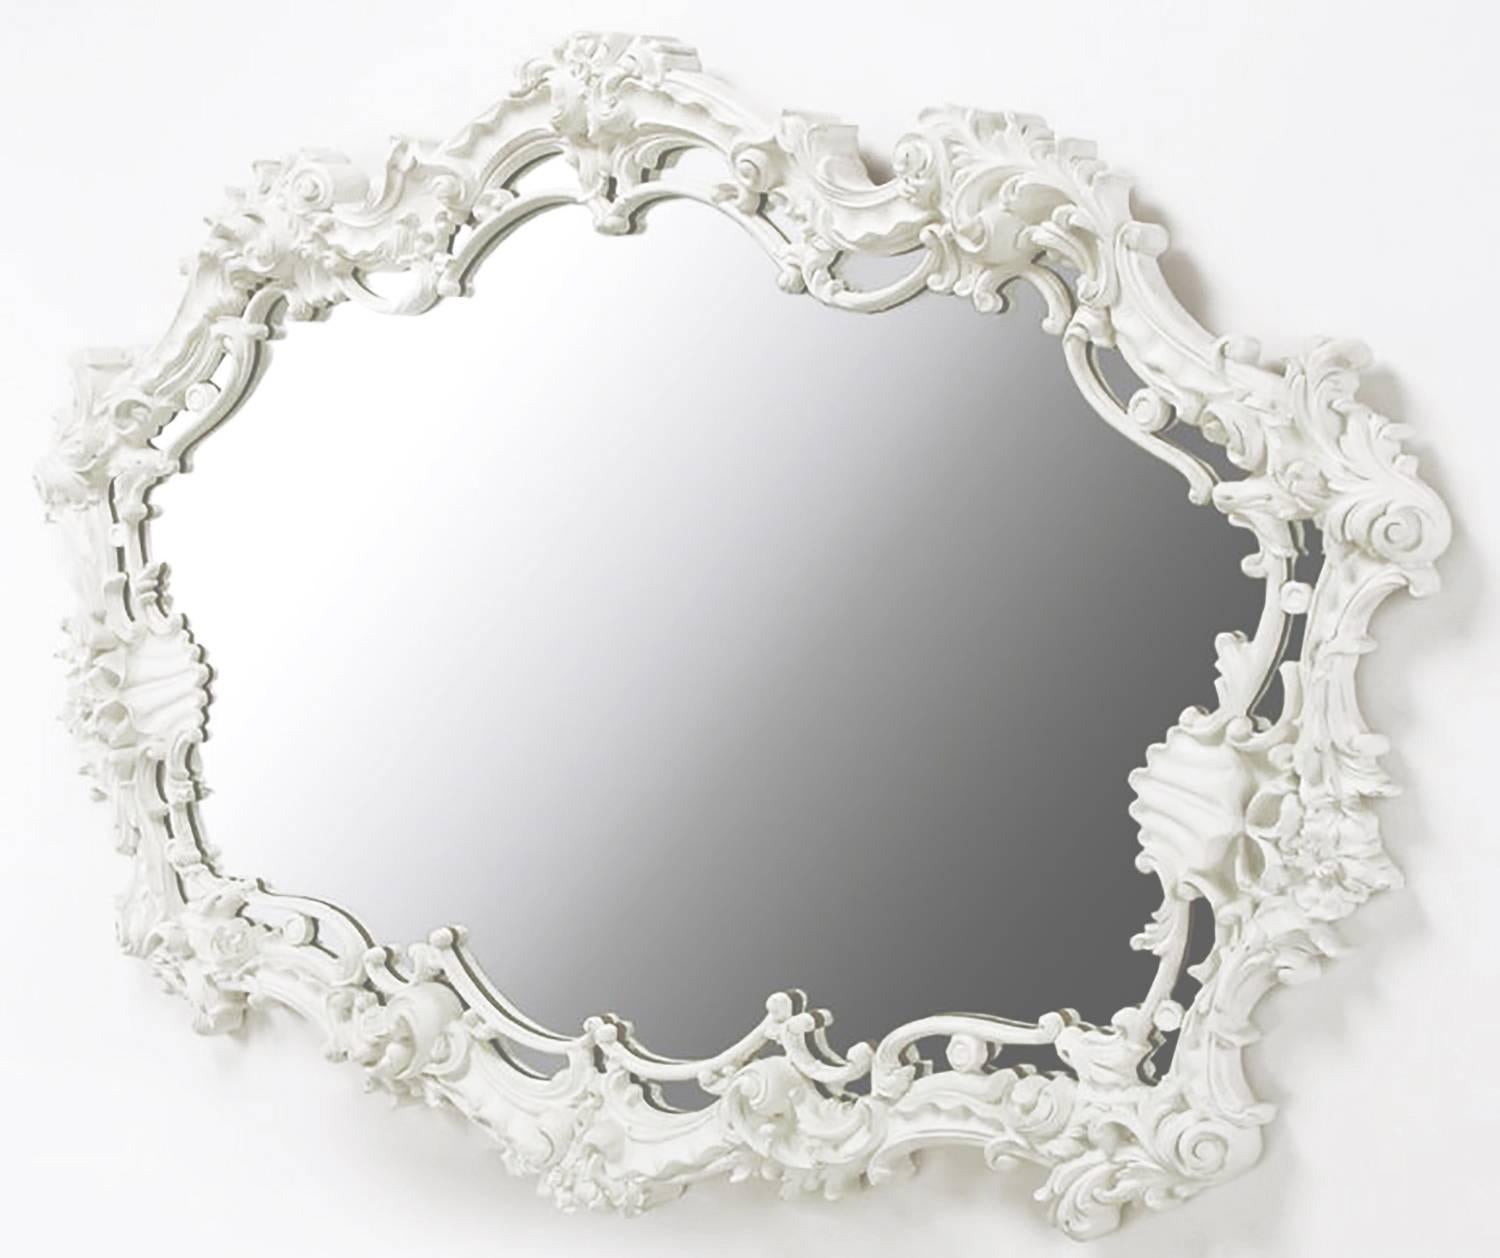 Außergewöhnlicher Gussgesso-Spiegel im italienischen Rokoko-Stil in weißem Lack mit Filigran- und Muscheldetails. Perfekt für einen Waschtisch, über einem Kaminsims oder im Schlafzimmer über einer langen Kommode. Serge Roche und Dorothy Draper waren